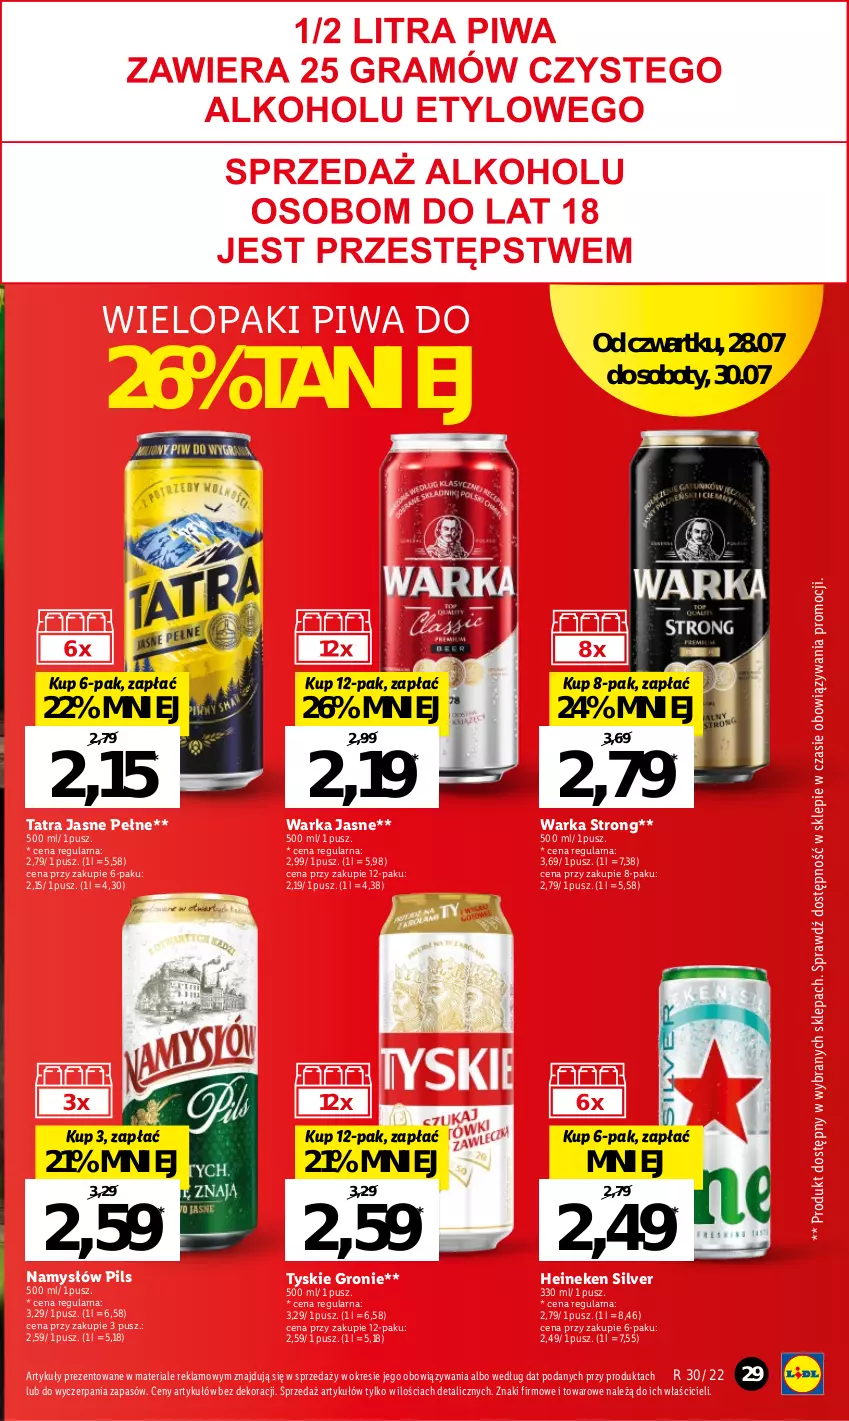 Gazetka promocyjna Lidl - GAZETKA - ważna 28.07 do 30.07.2022 - strona 29 - produkty: Heineken, Namysłów, Piwa, Tatra, Tyskie, Warka